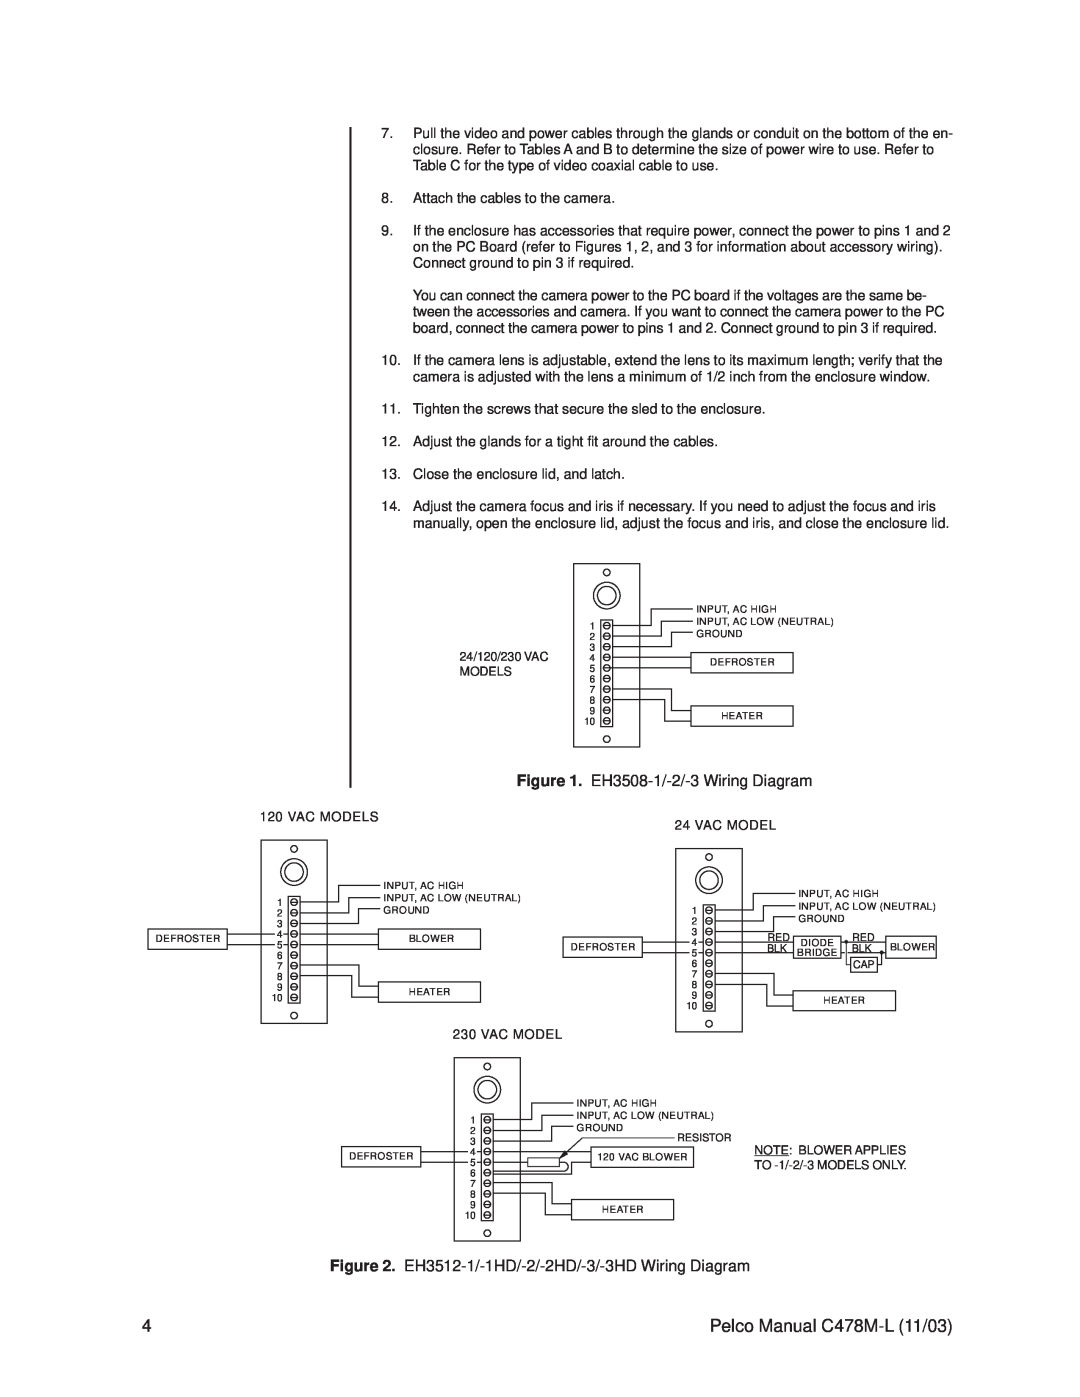 Pelco EH3512, EH3515 operation manual EH3508-1/-2/-3Wiring Diagram, Pelco Manual C478M-L11/03 